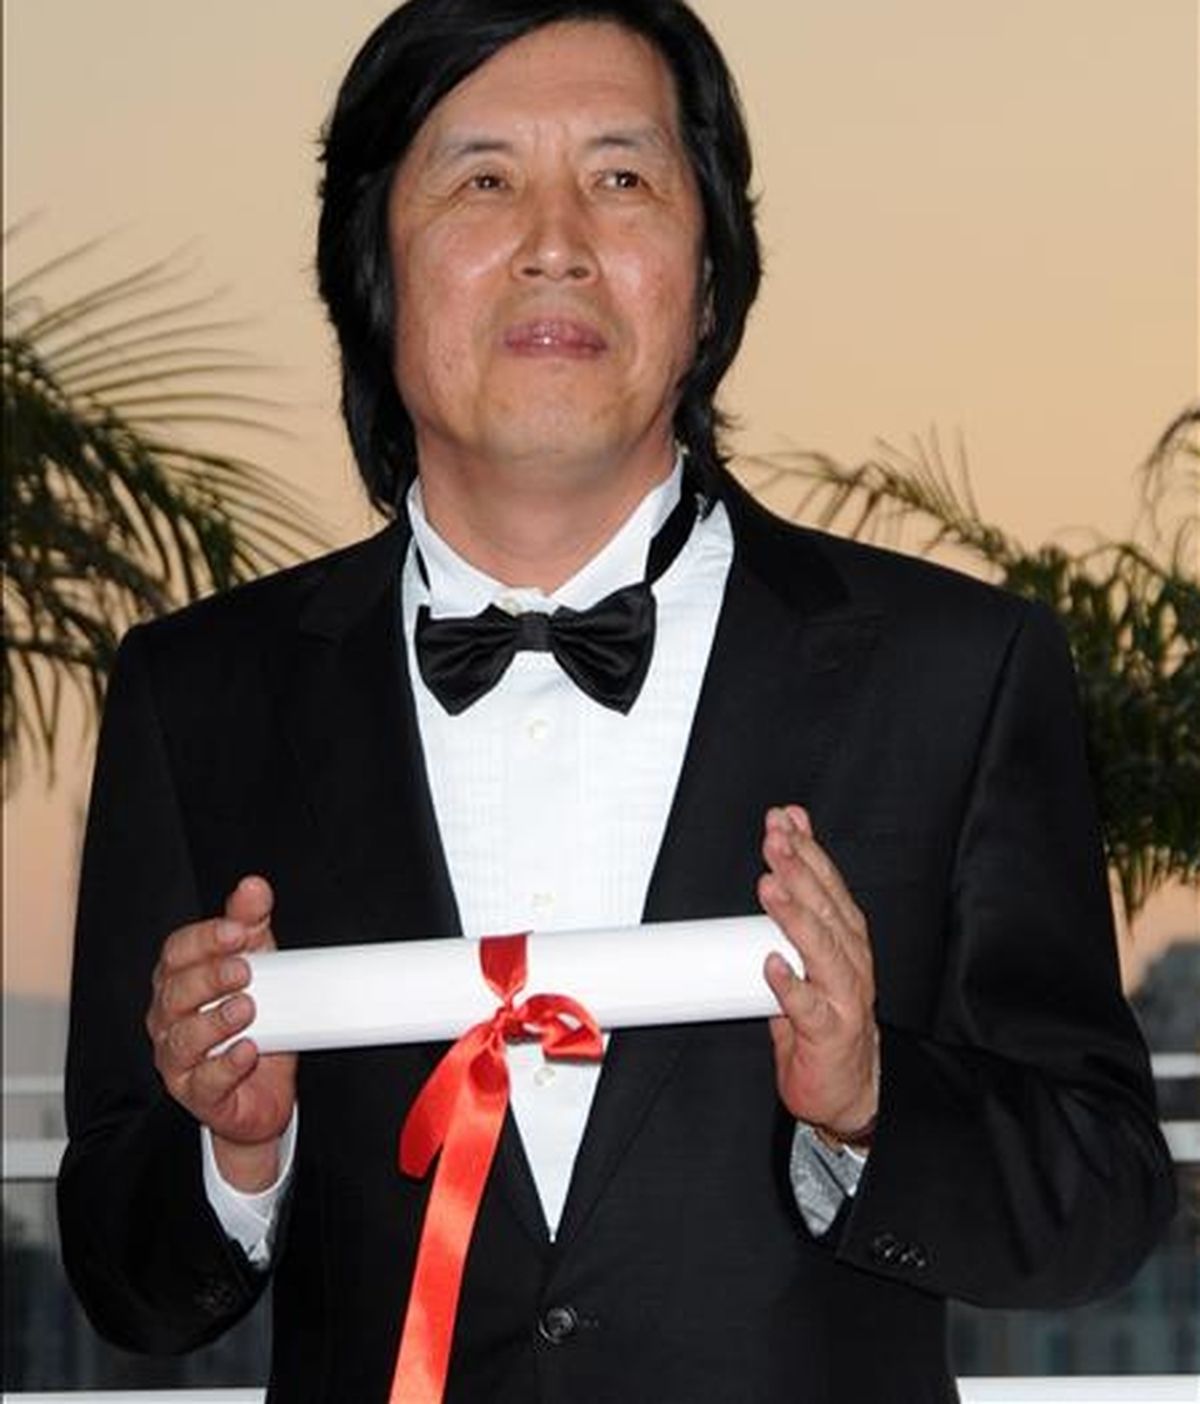 El director surcoreano de cine Lee Chang-dong posa el 23 de mayo de 2010, tras ganar el premio al Mejor Guión de la edición 63 Festival de Cannes por la película "Poetry", en Cannes (Francia). EFE/Archivo